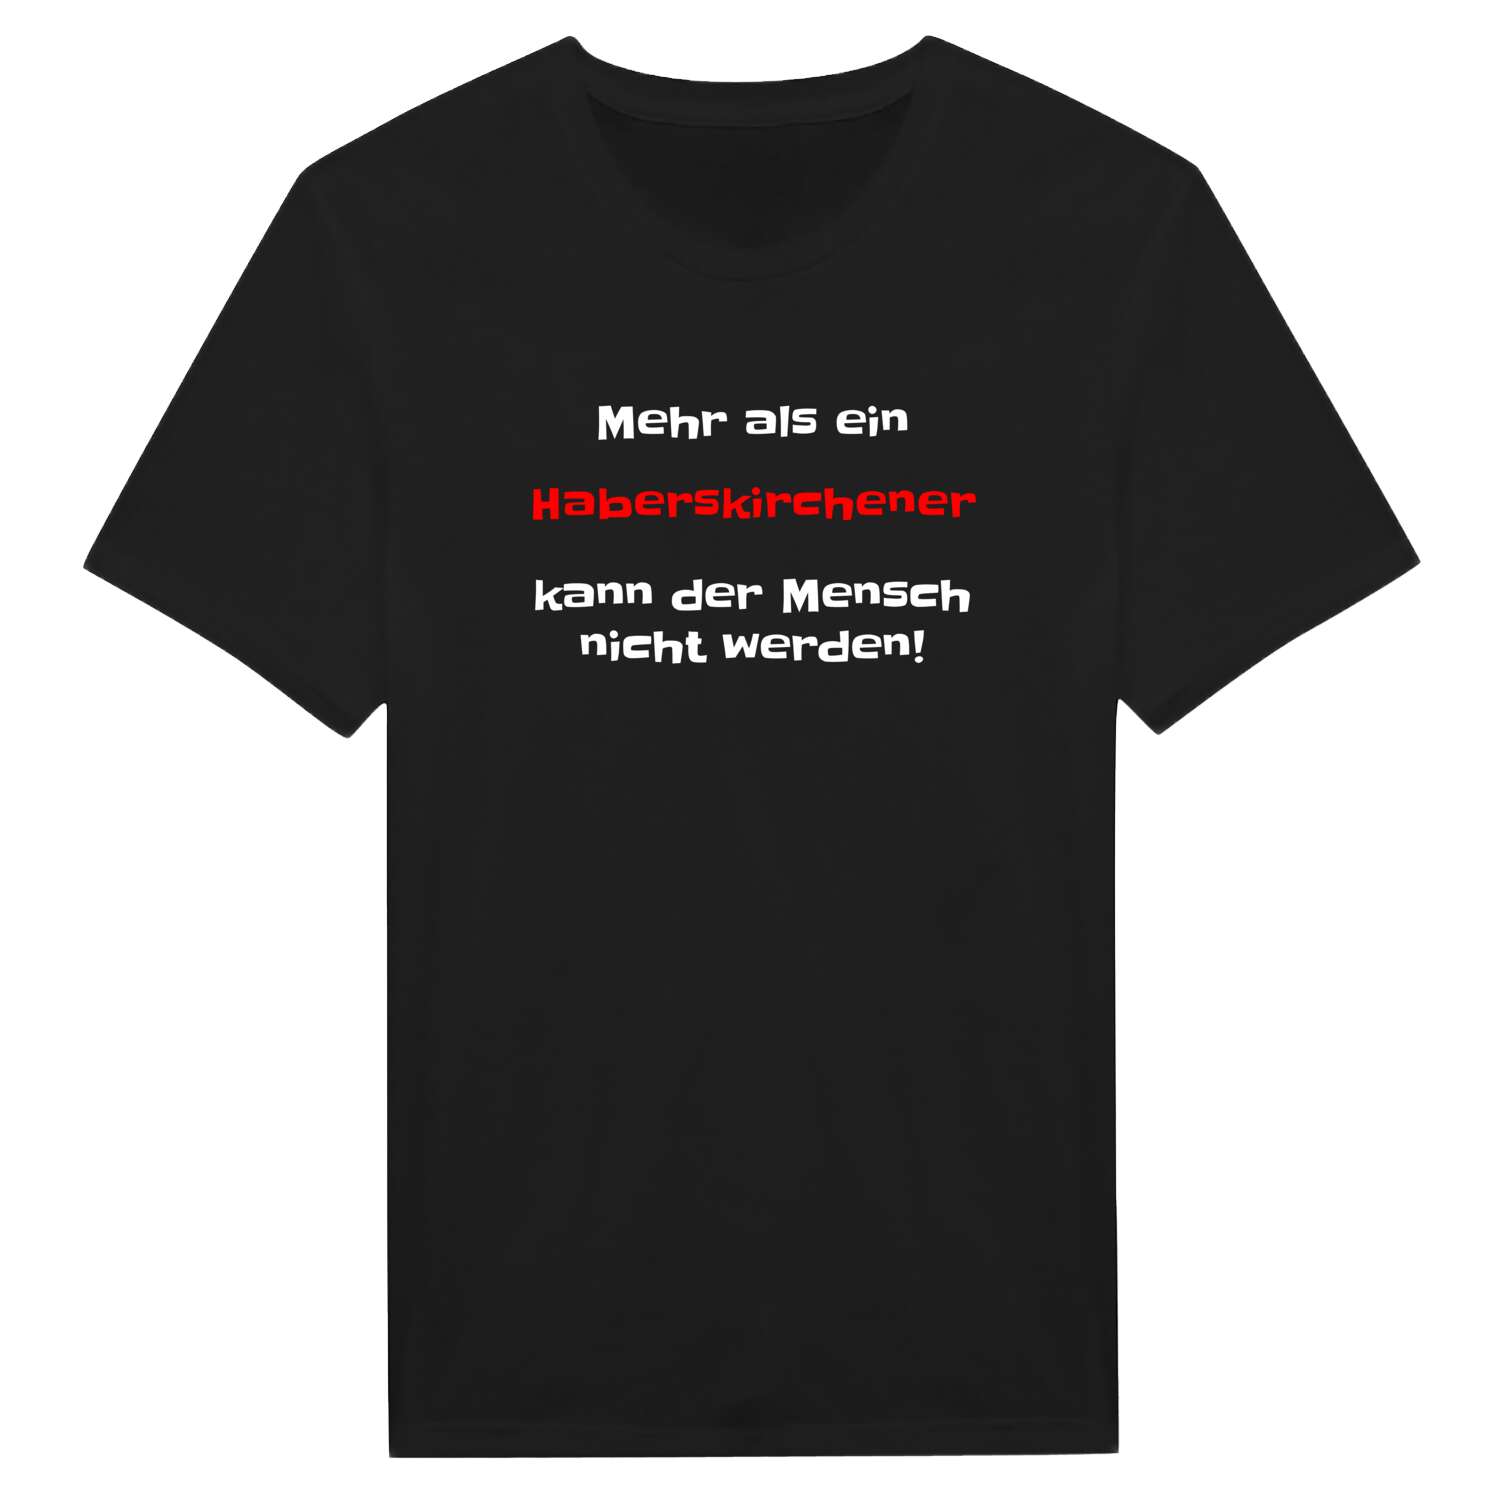 Haberskirchen T-Shirt »Mehr als ein«